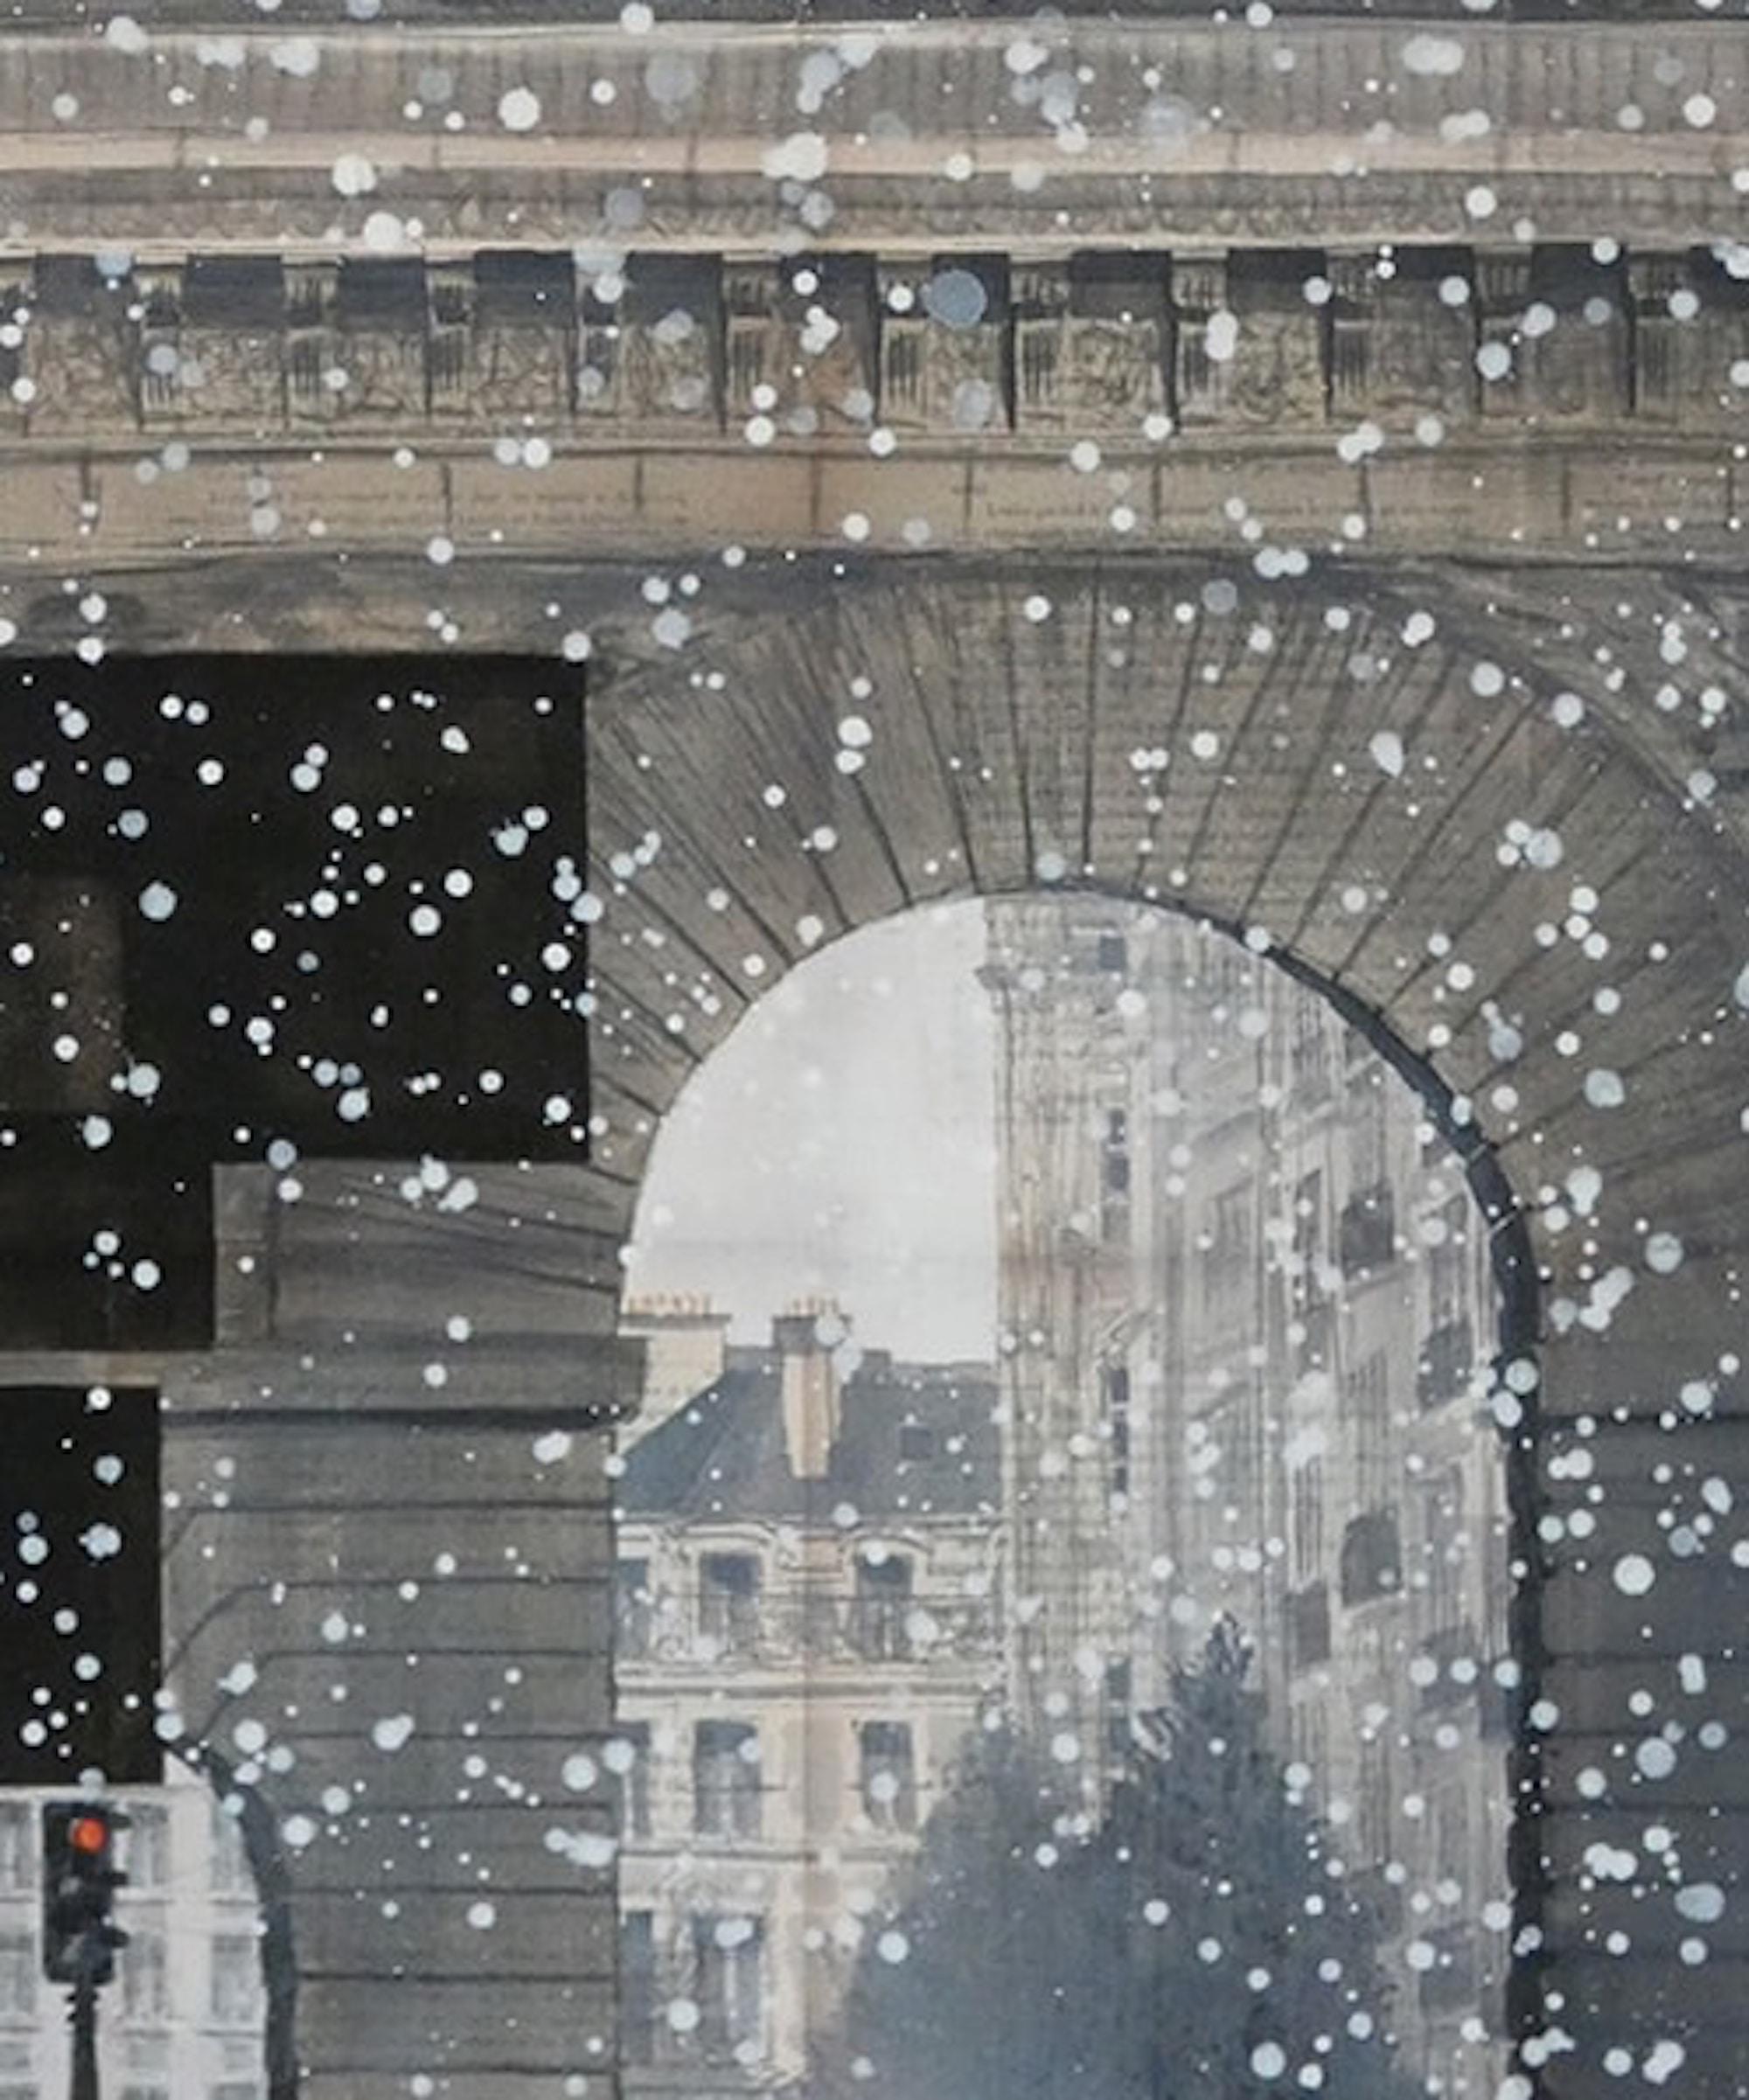 Sonic by Guillaume Chansarel - Urban landscape painting, Paris, buildings, snow For Sale 1